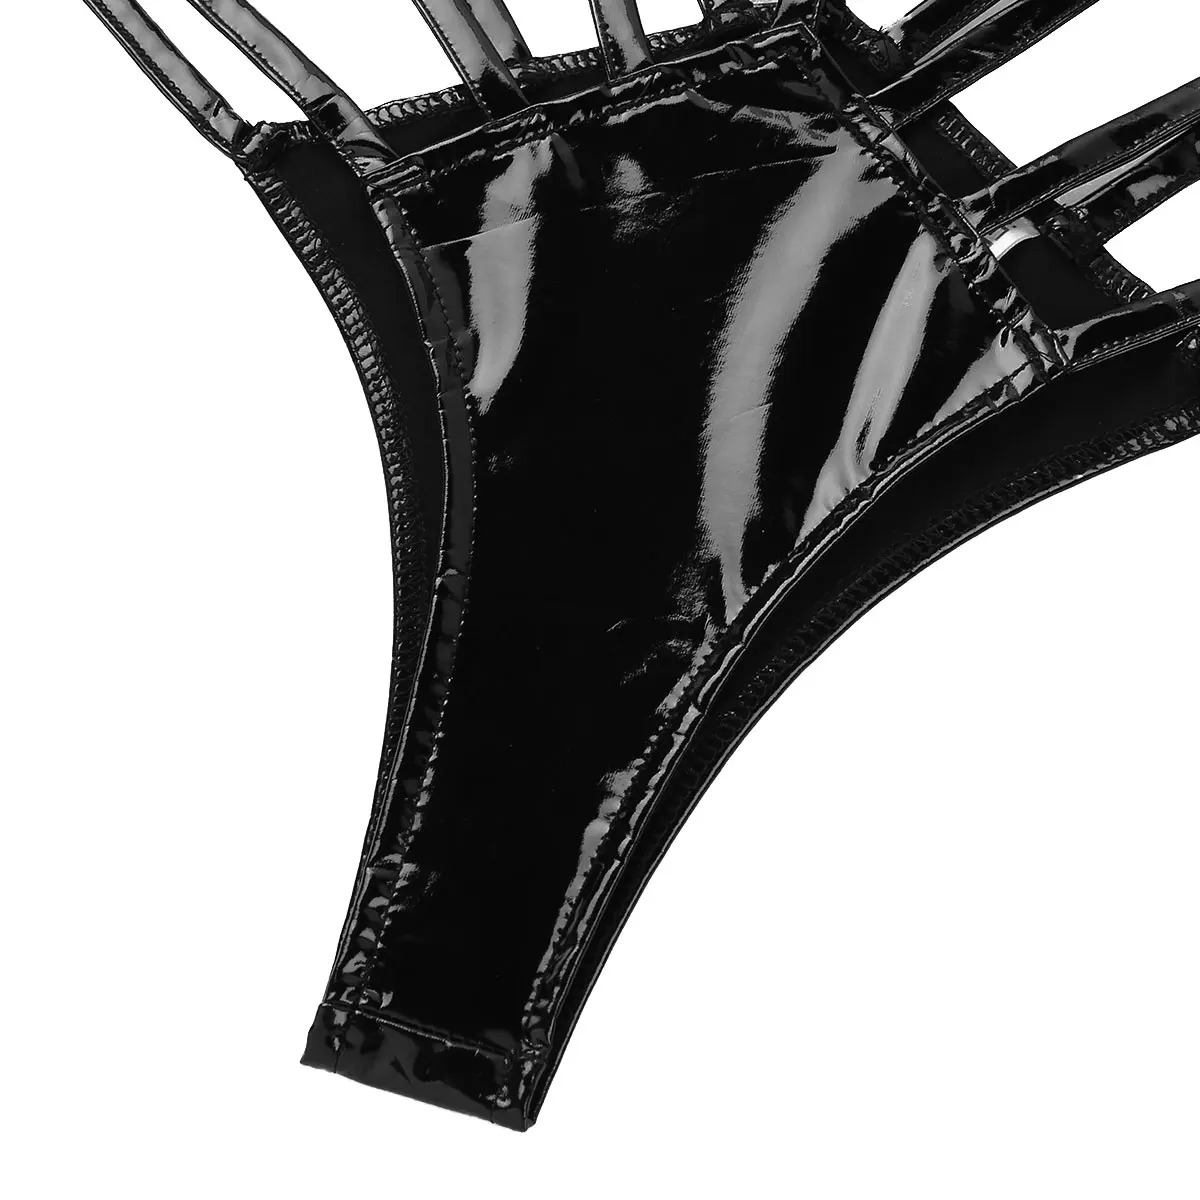 IEFiEL Mulheres do sexo Feminino Lingerie Olhar Molhado de Patente de Couro Ajustável Cintura Alta Corte Sólido de Tiras G-string Bikini Tanga Cueca